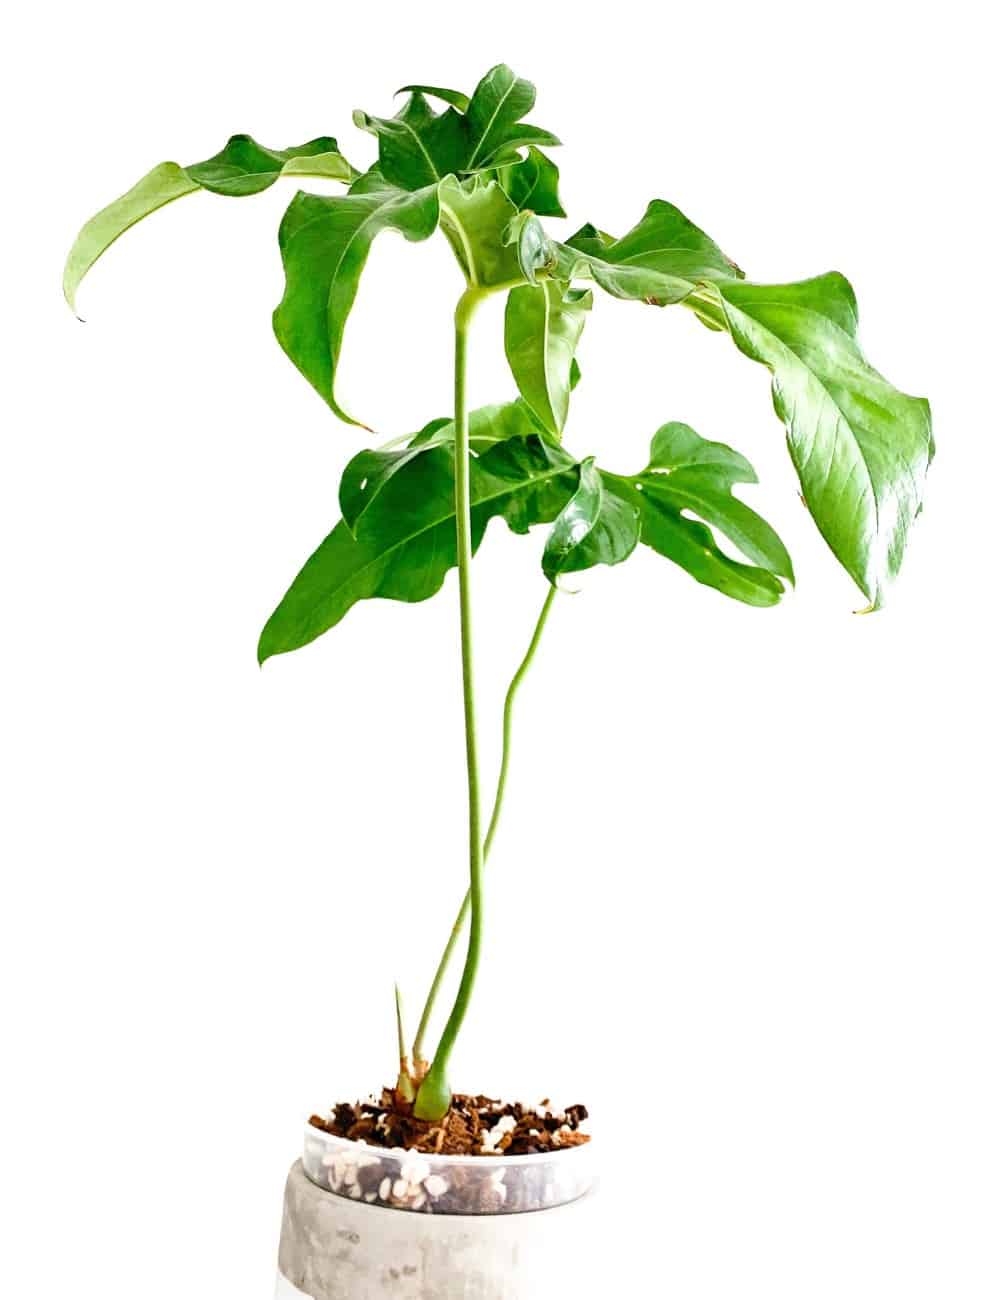 anthurium pedatum unique leaf shape